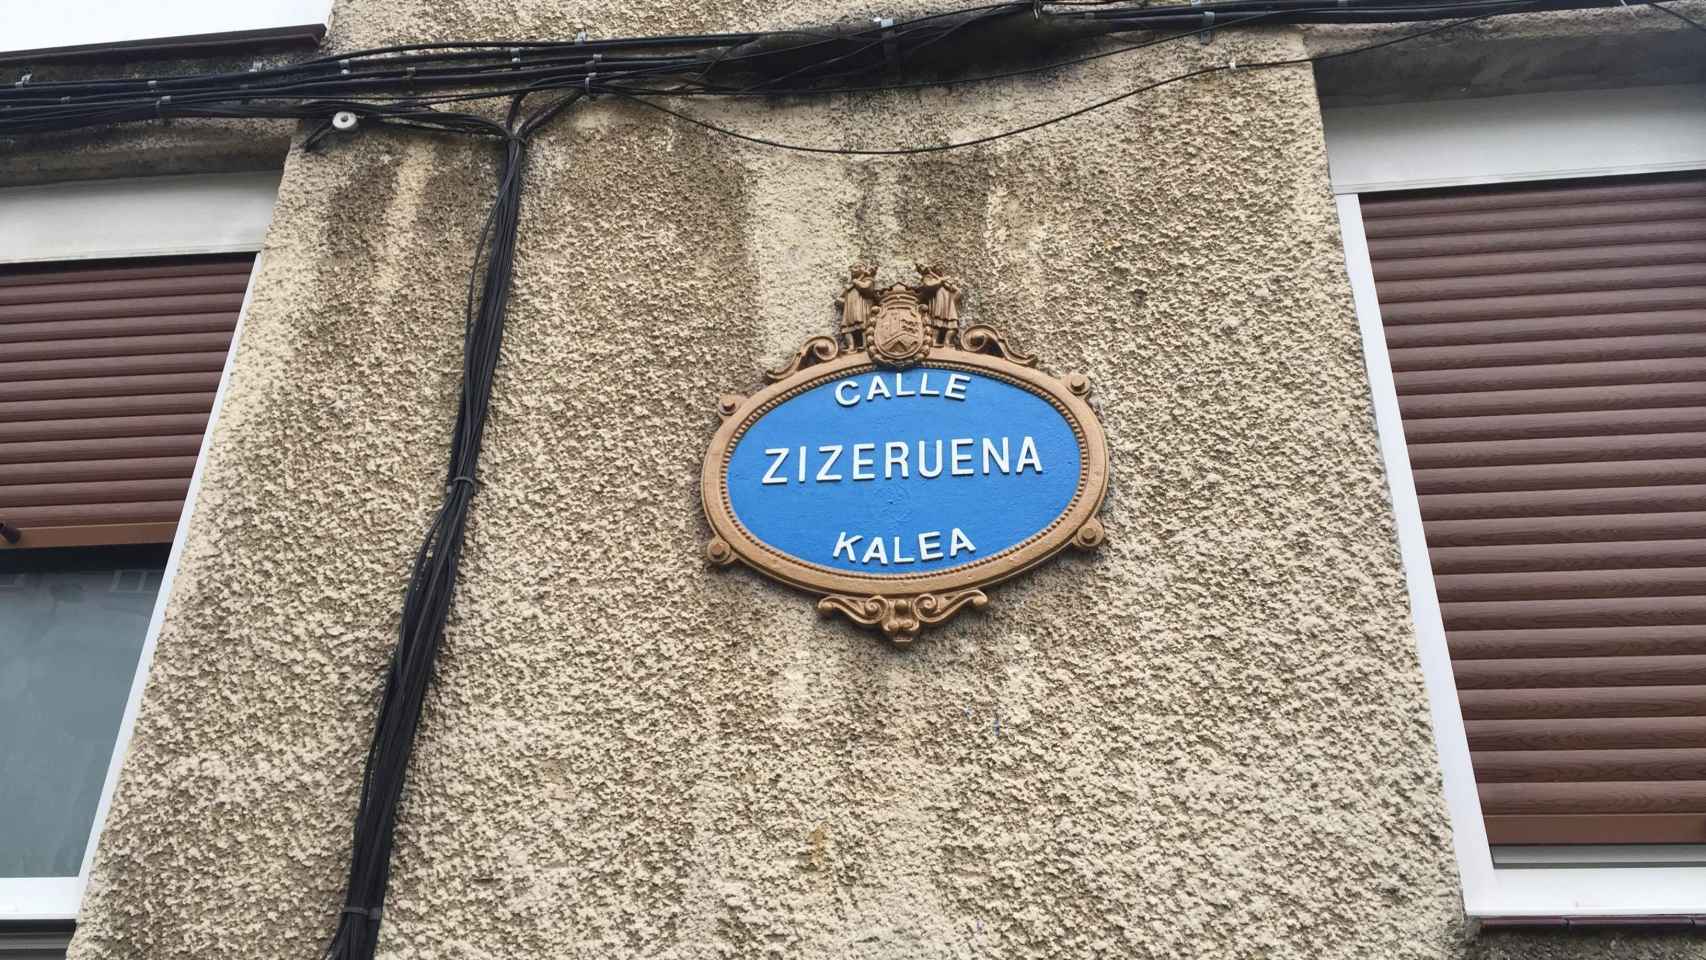 El asesinato tuvo lugar en la calle Zizeruena del barrio de Otxarkoaga, Bilbao